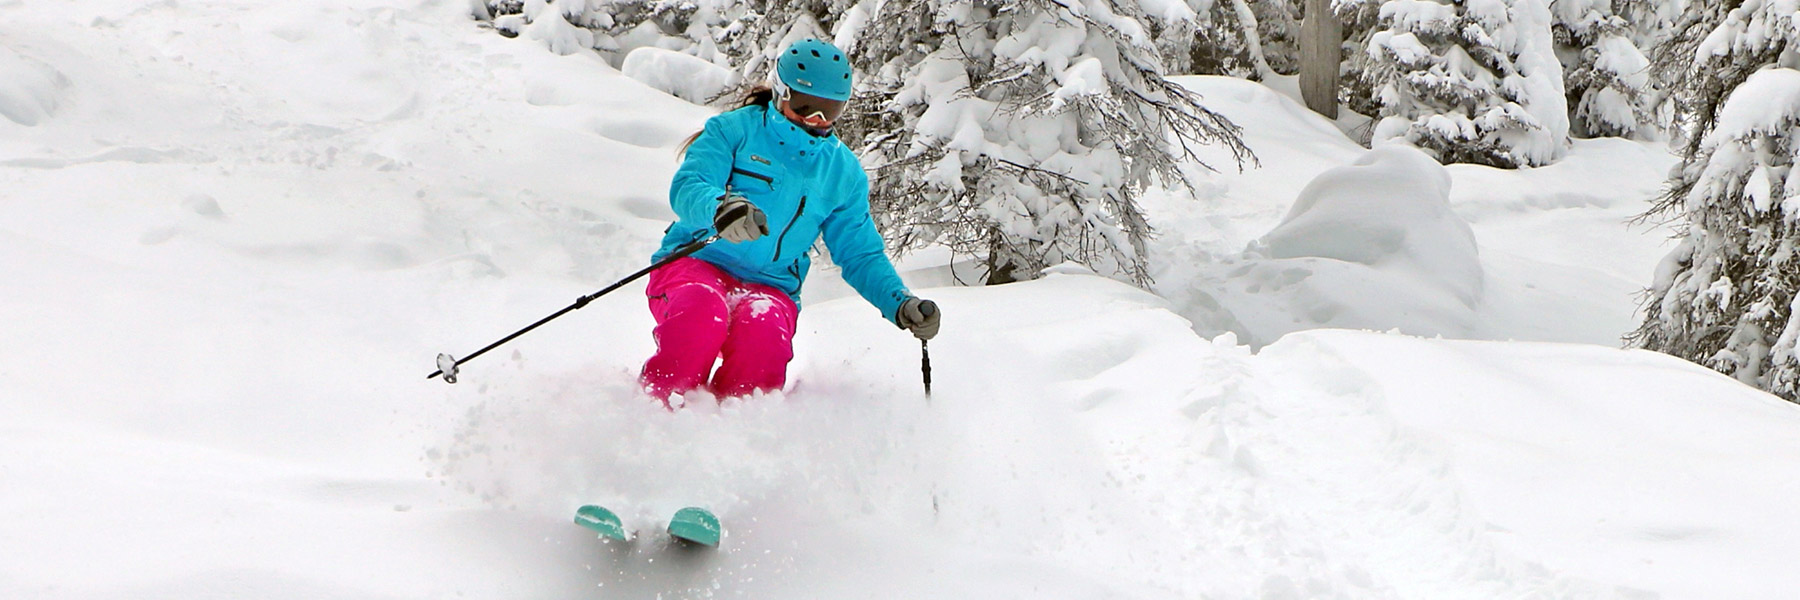 The Best of Idaho Ski Resorts — Brundage Mountain Skiing